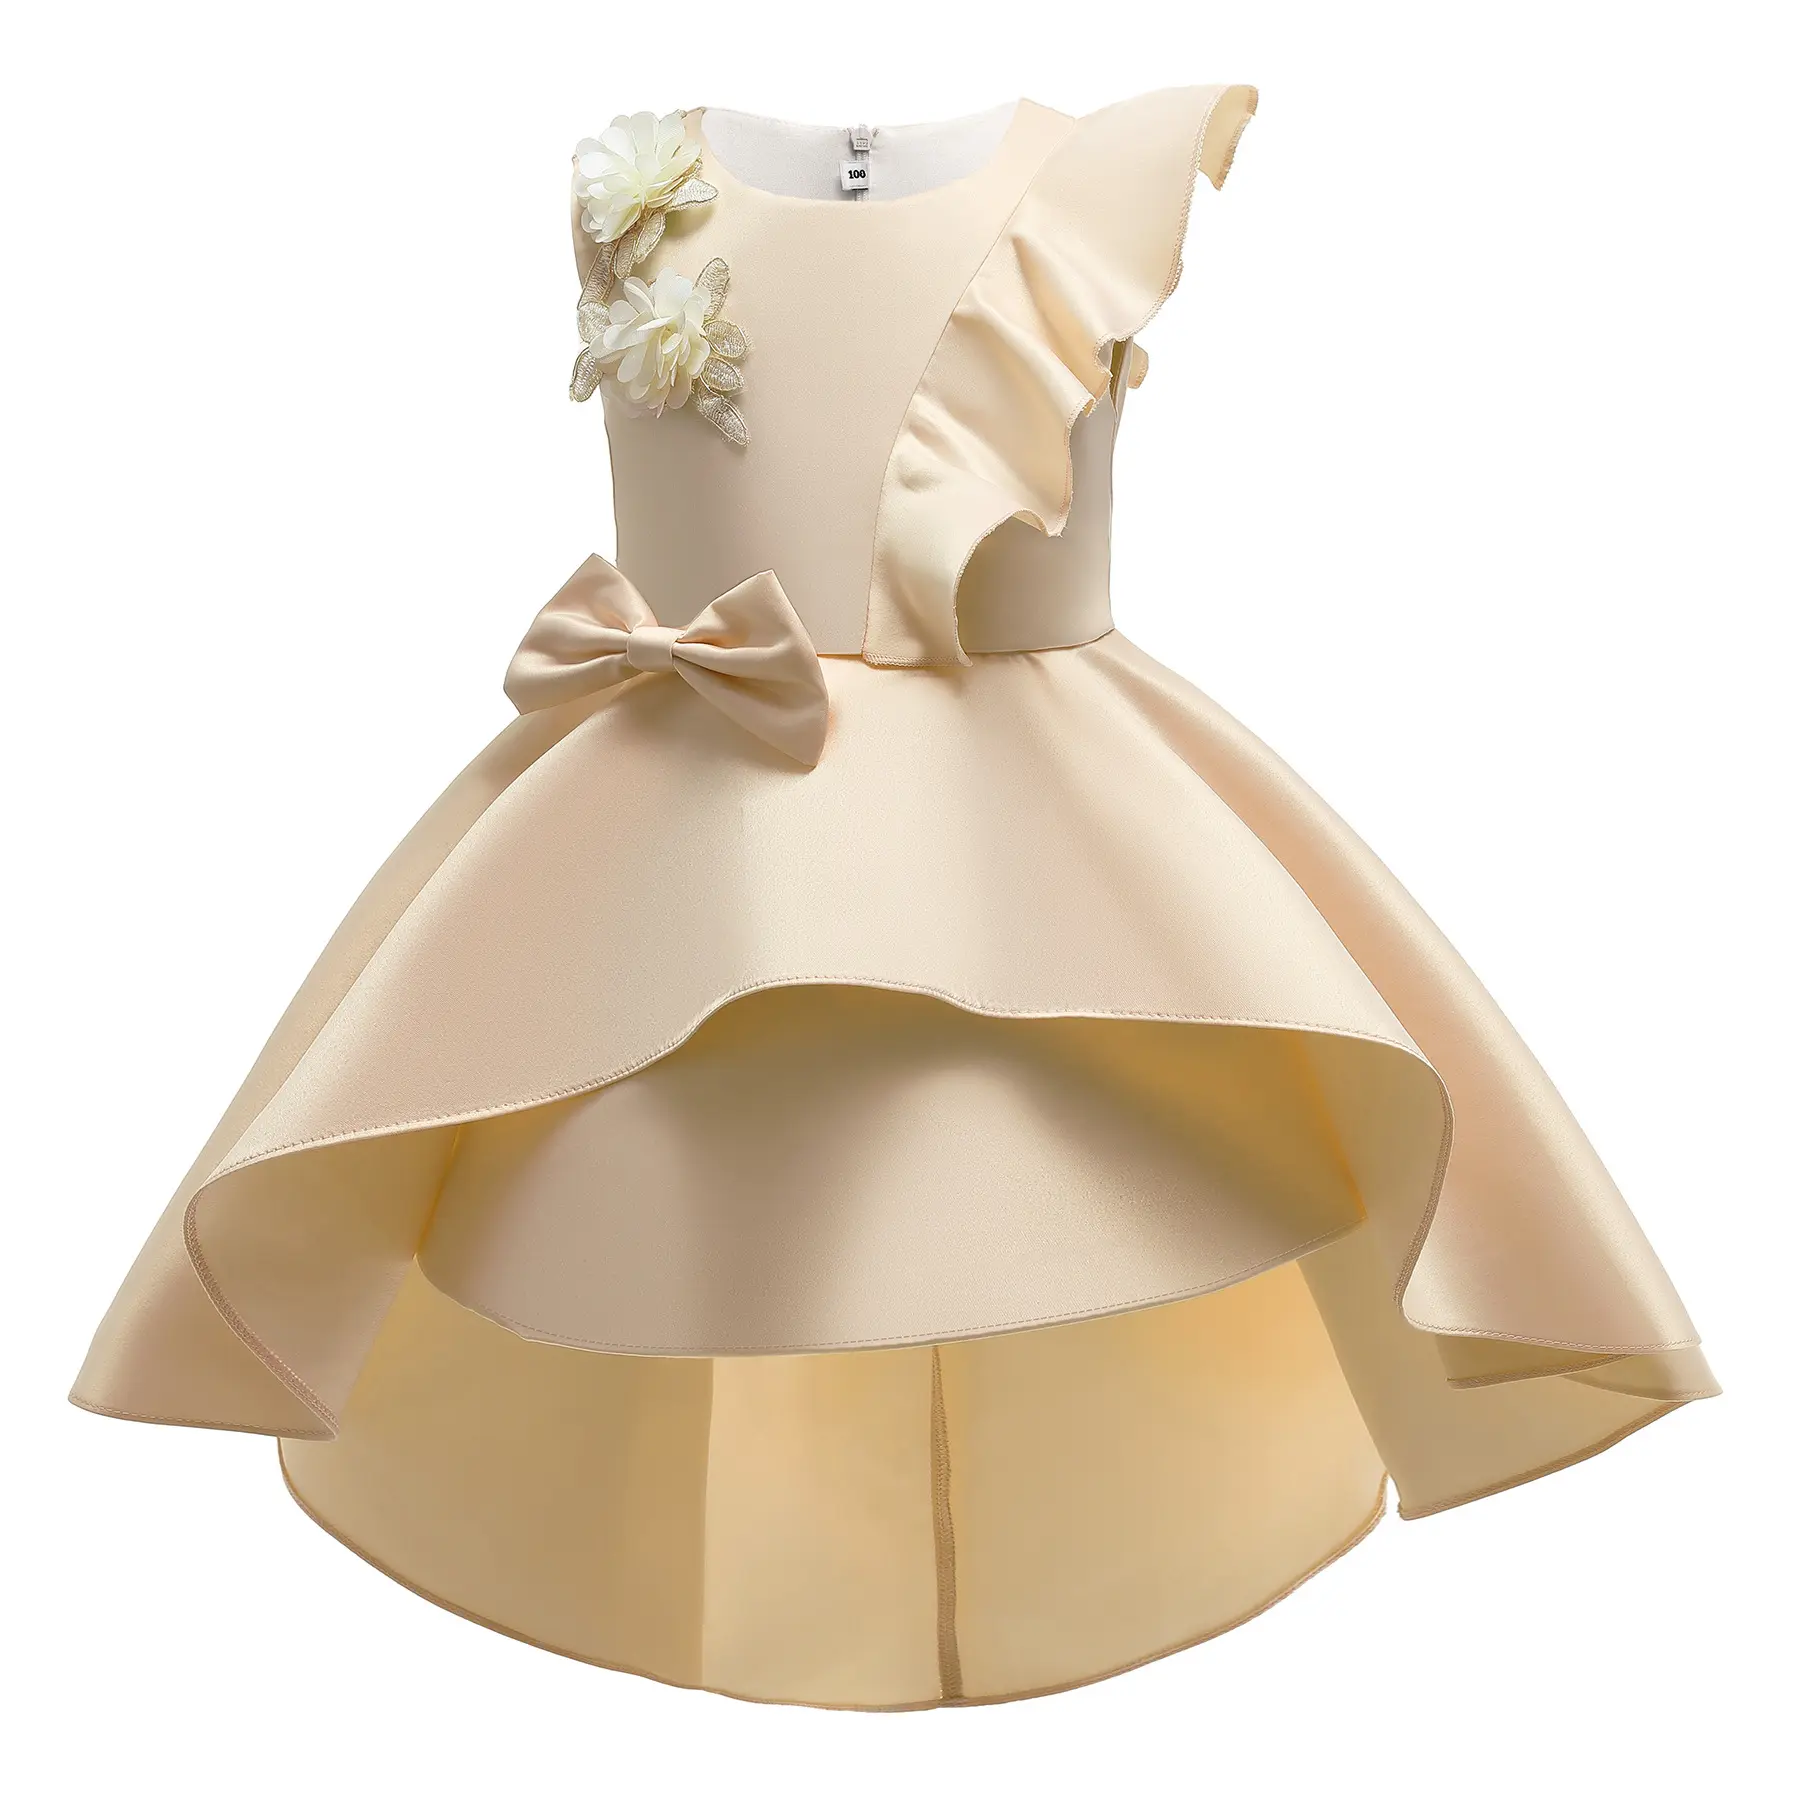 New Thời Trang Trẻ Em Bên Mặc Dresses Mới Nhất Cô Gái Thiết Kế Áo Dài Ruffle Váy Cho Cô Gái Của 8 Năm Tuổi